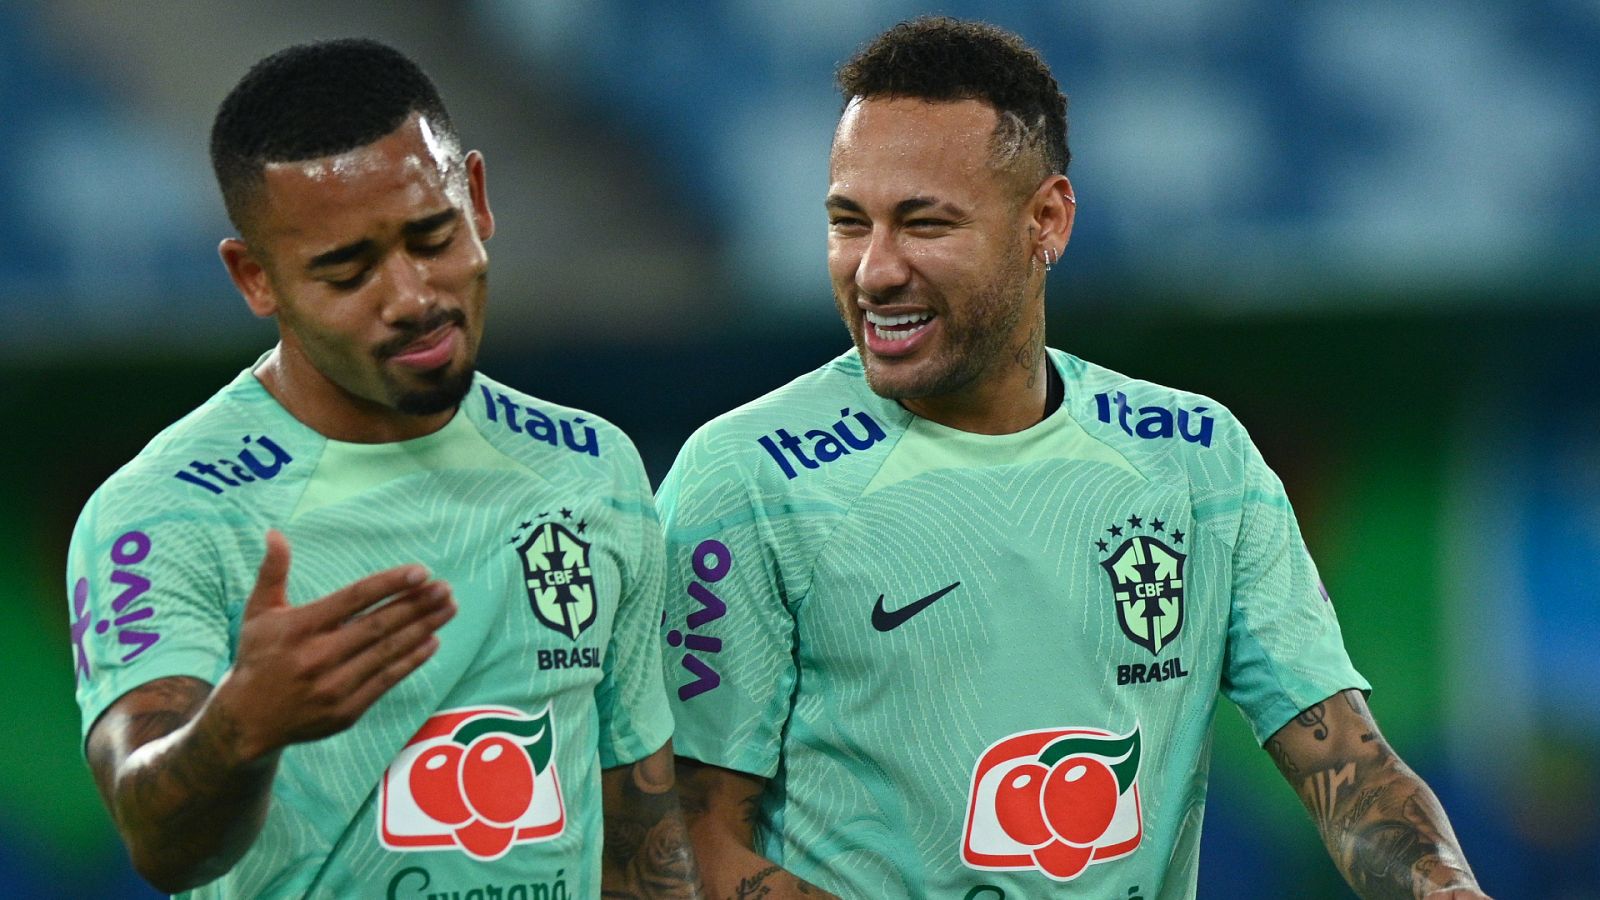 Las mejores ofertas en Brasil Neymar Jr. Camisetas de Fútbol